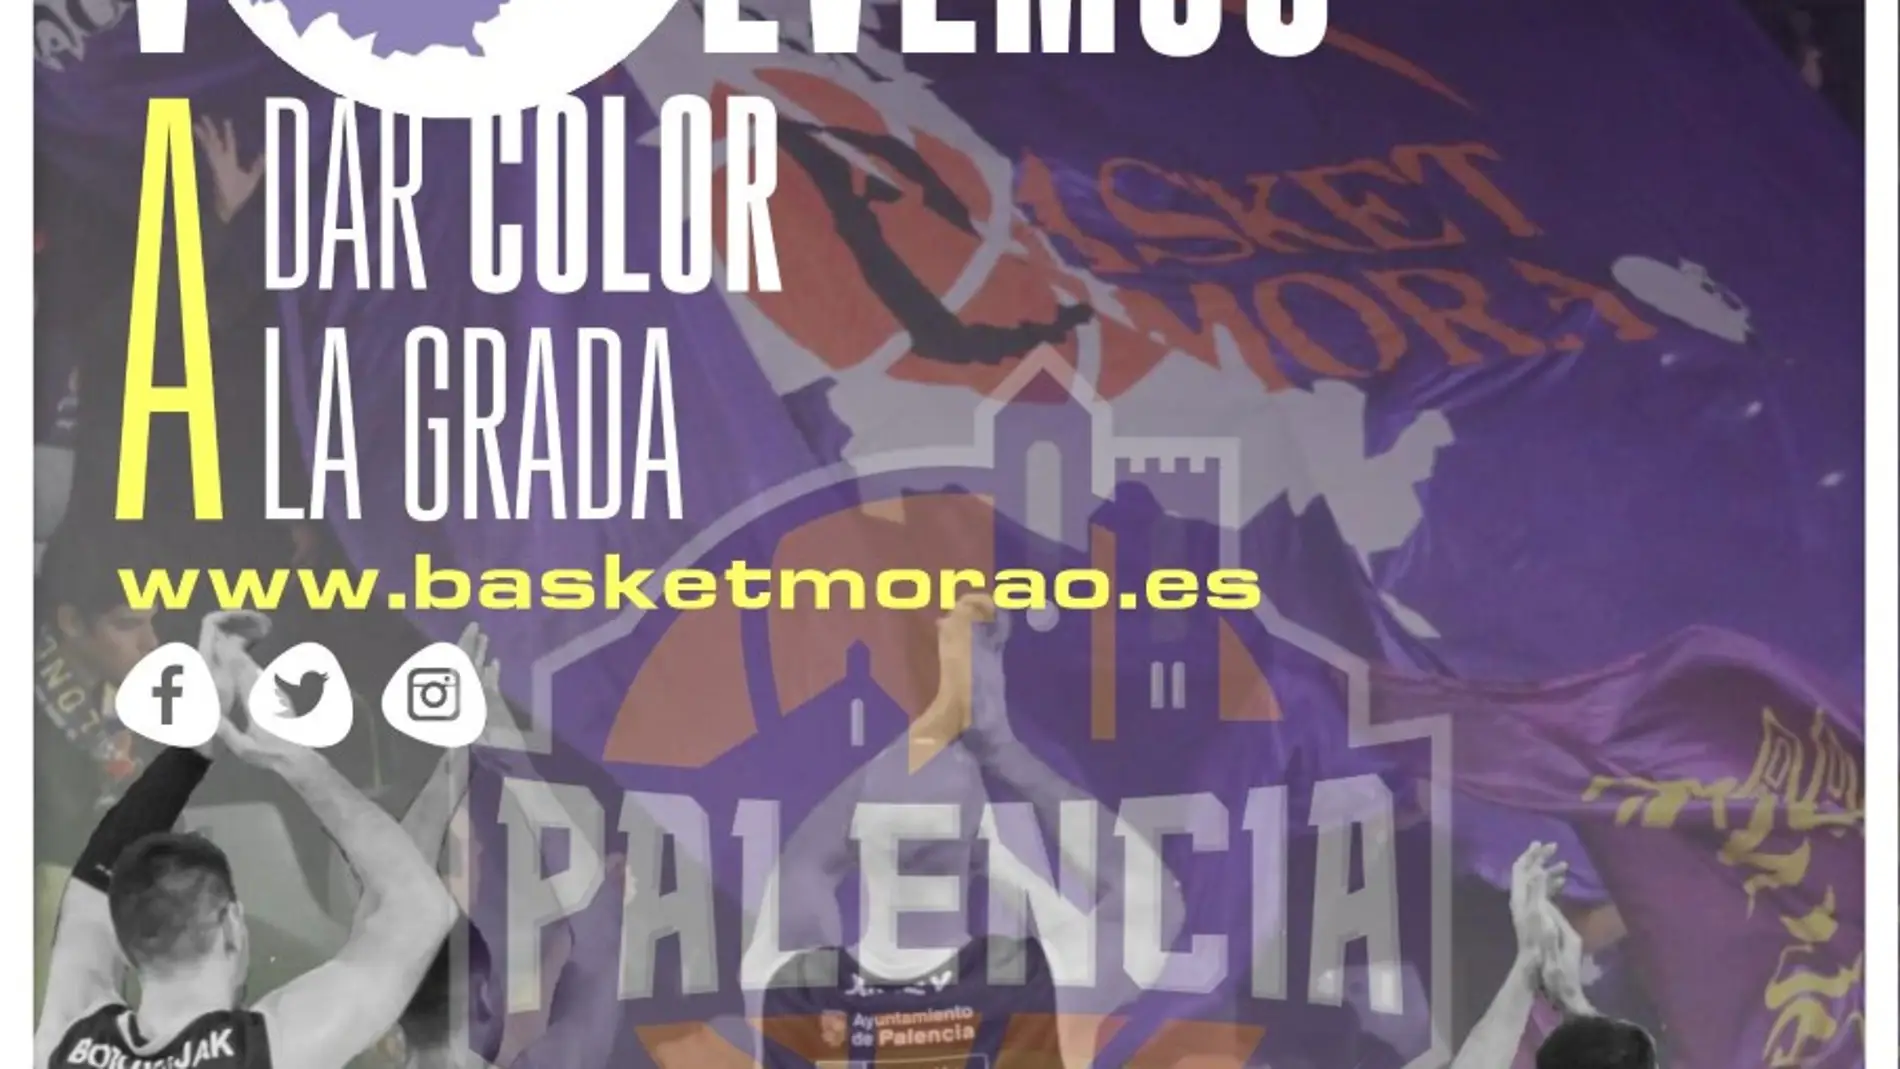  "Volemos a dar color a la grada", la campaña de socios de la Peña Basket Morao